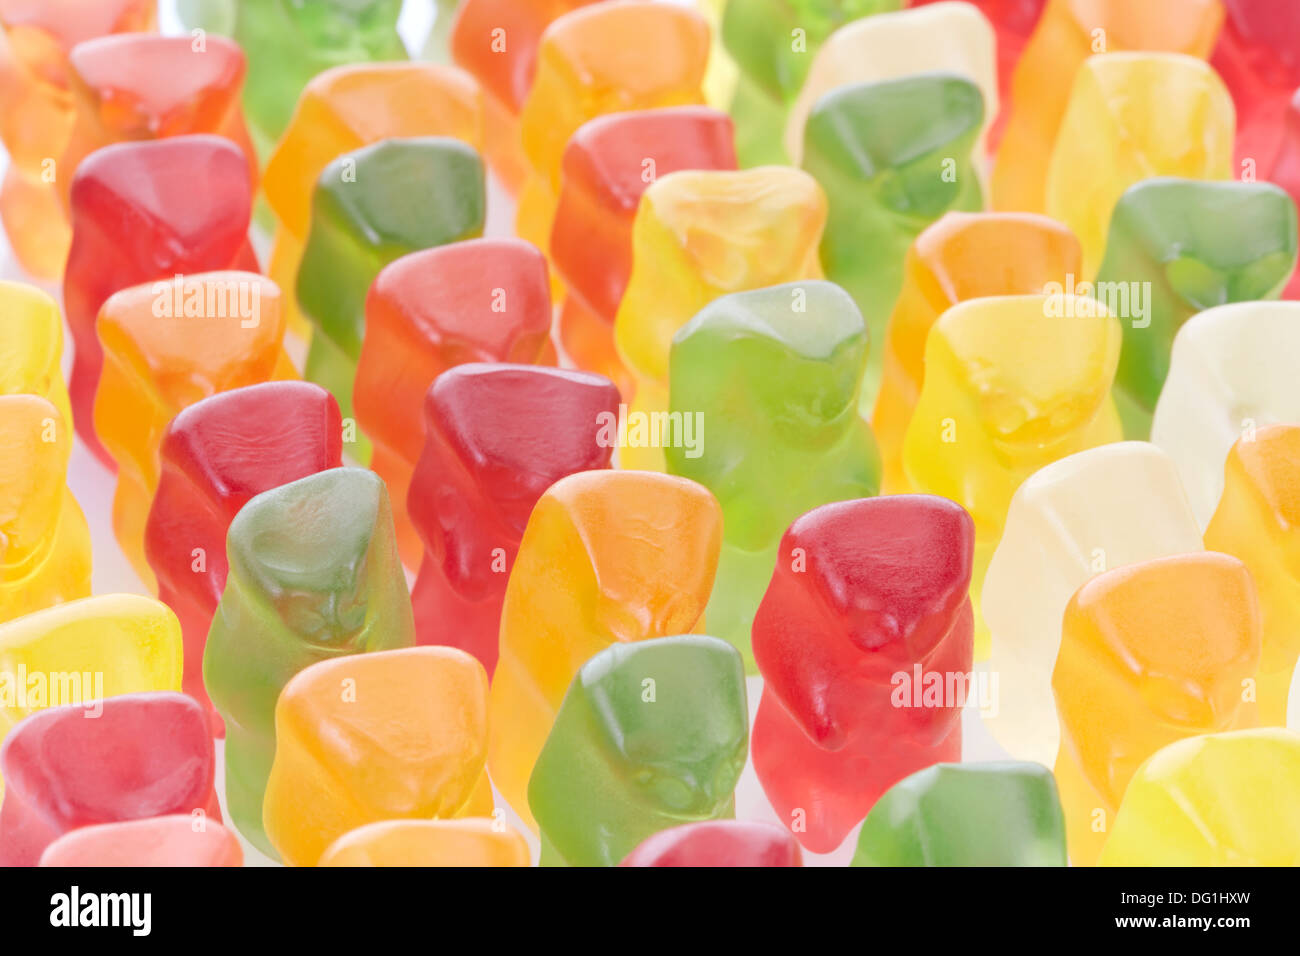 Gummy bears, foule concept Banque D'Images